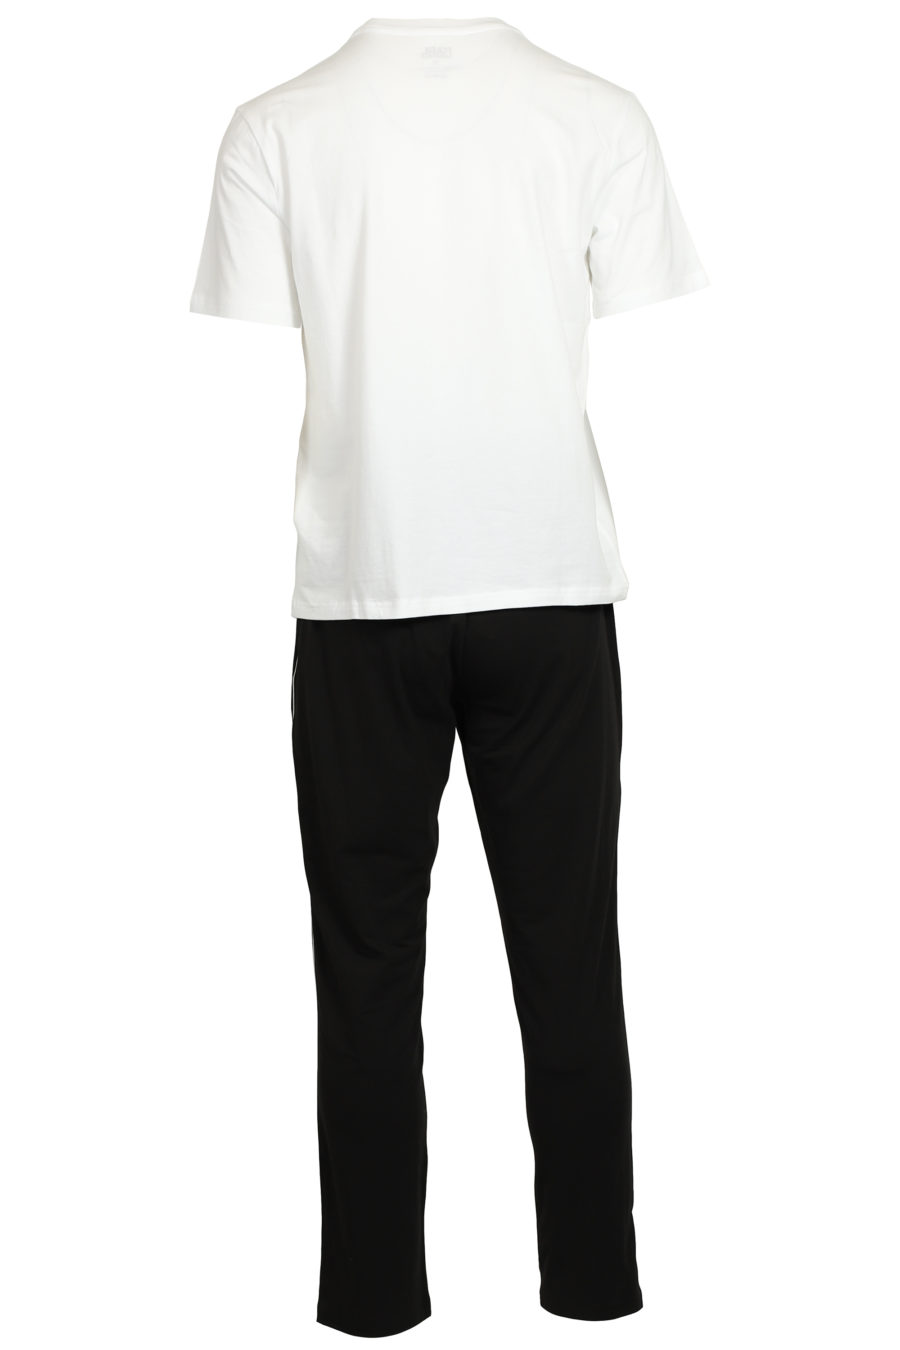 Schwarz-weißes Pyjama-Set mit Gummilogo - IMG 3736